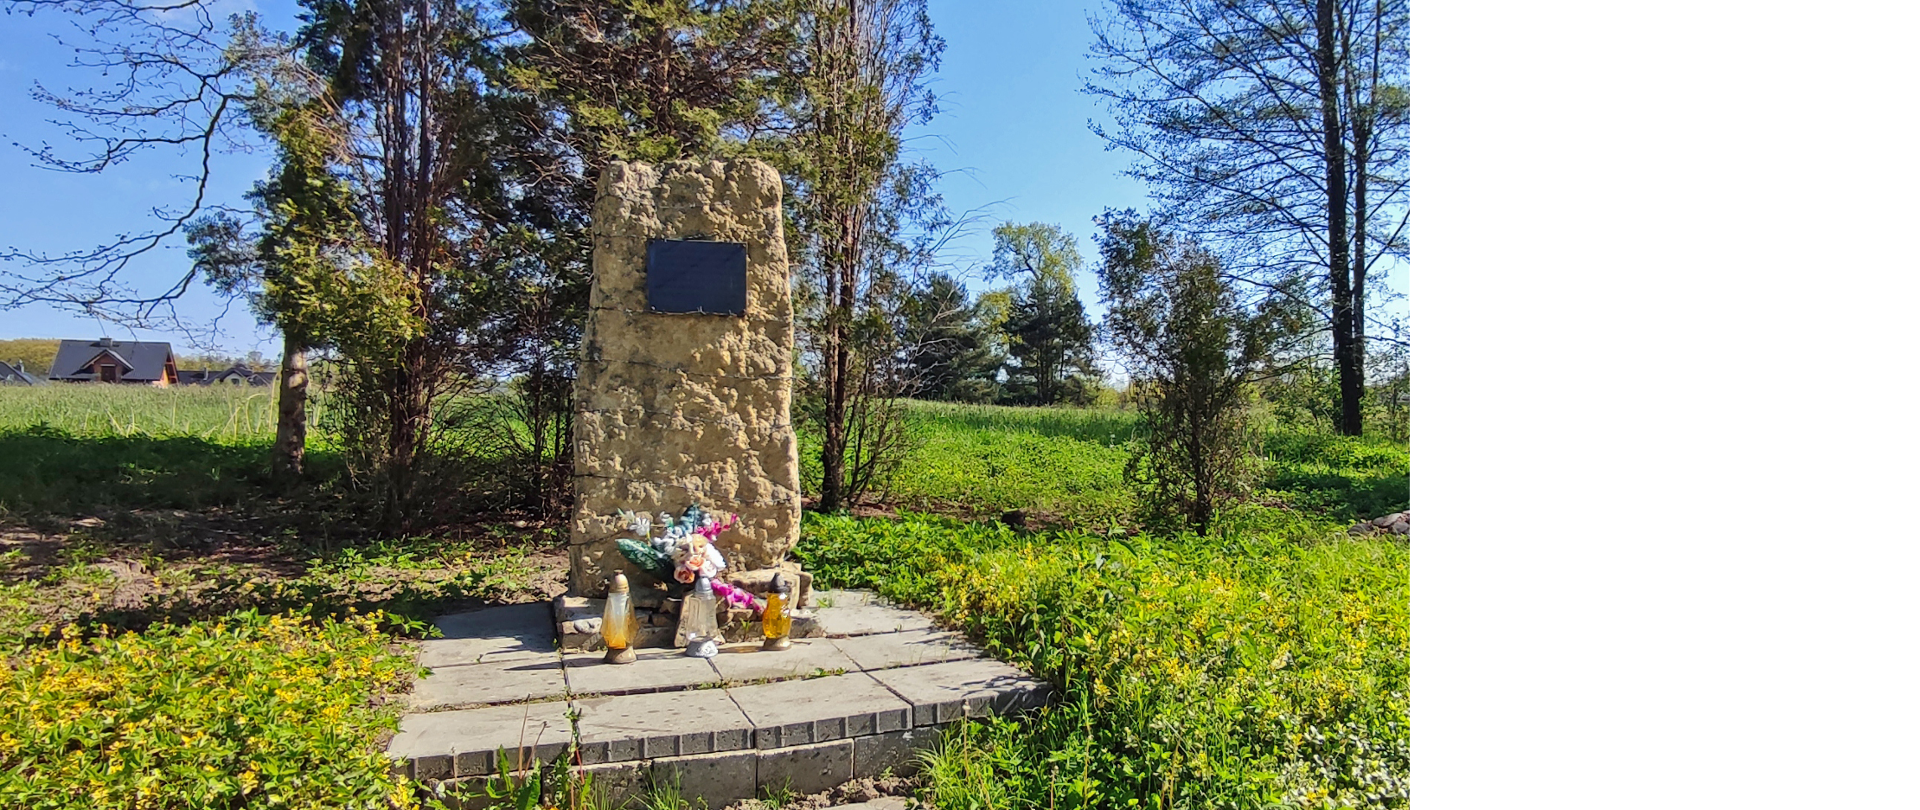 Obelisk upamiętniający więźniów podobozu KL Auschwitz-Birkenau w Kobiórze owinięty drutem kolczastym na którym powieszona jest tablica informacyjna. W tle rosną zielone drzewa.